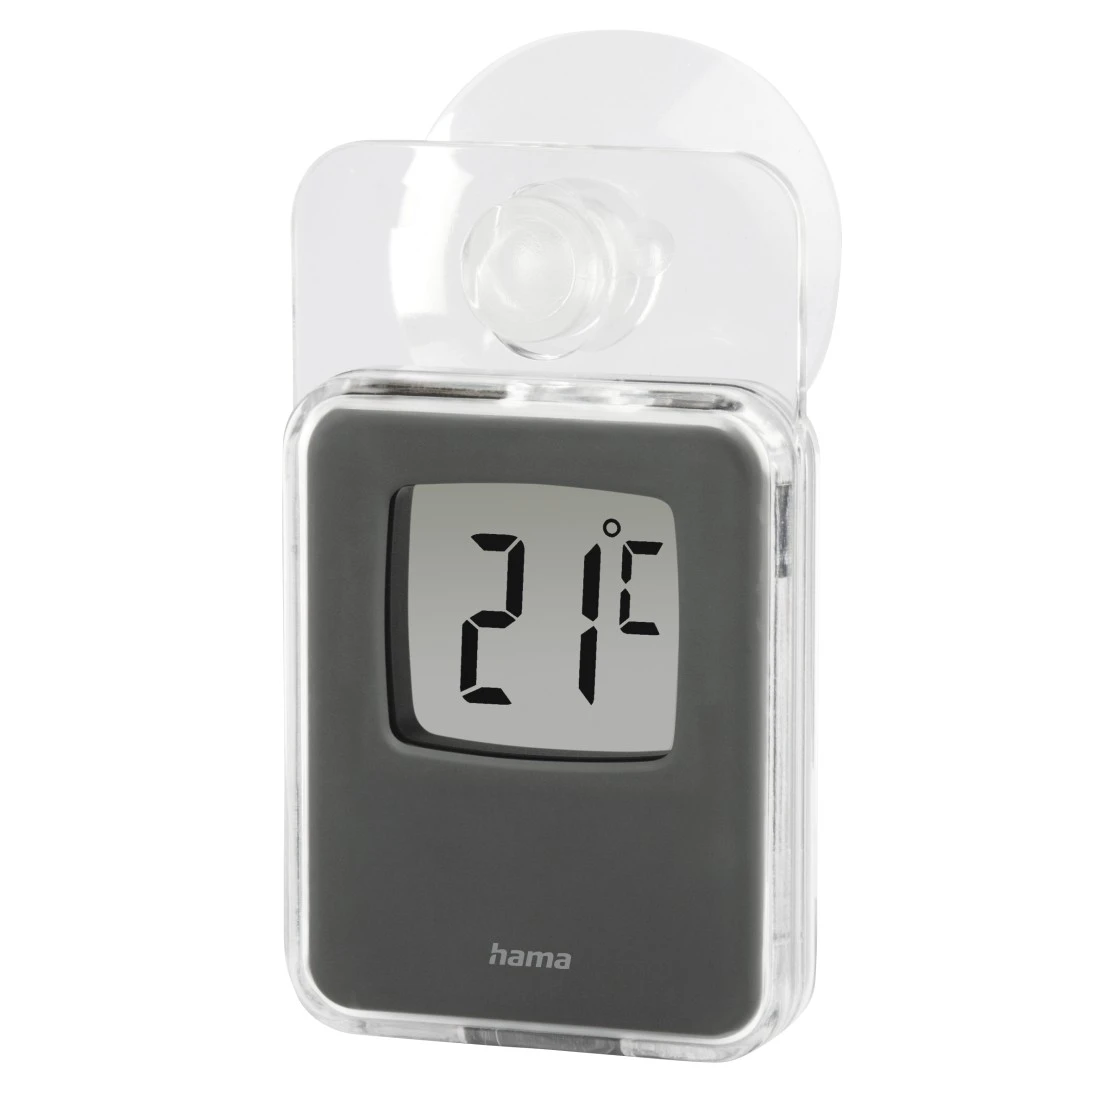 Fensterthermometer für innen und außen, digital, 7,5 x 4,6 cm, Grau